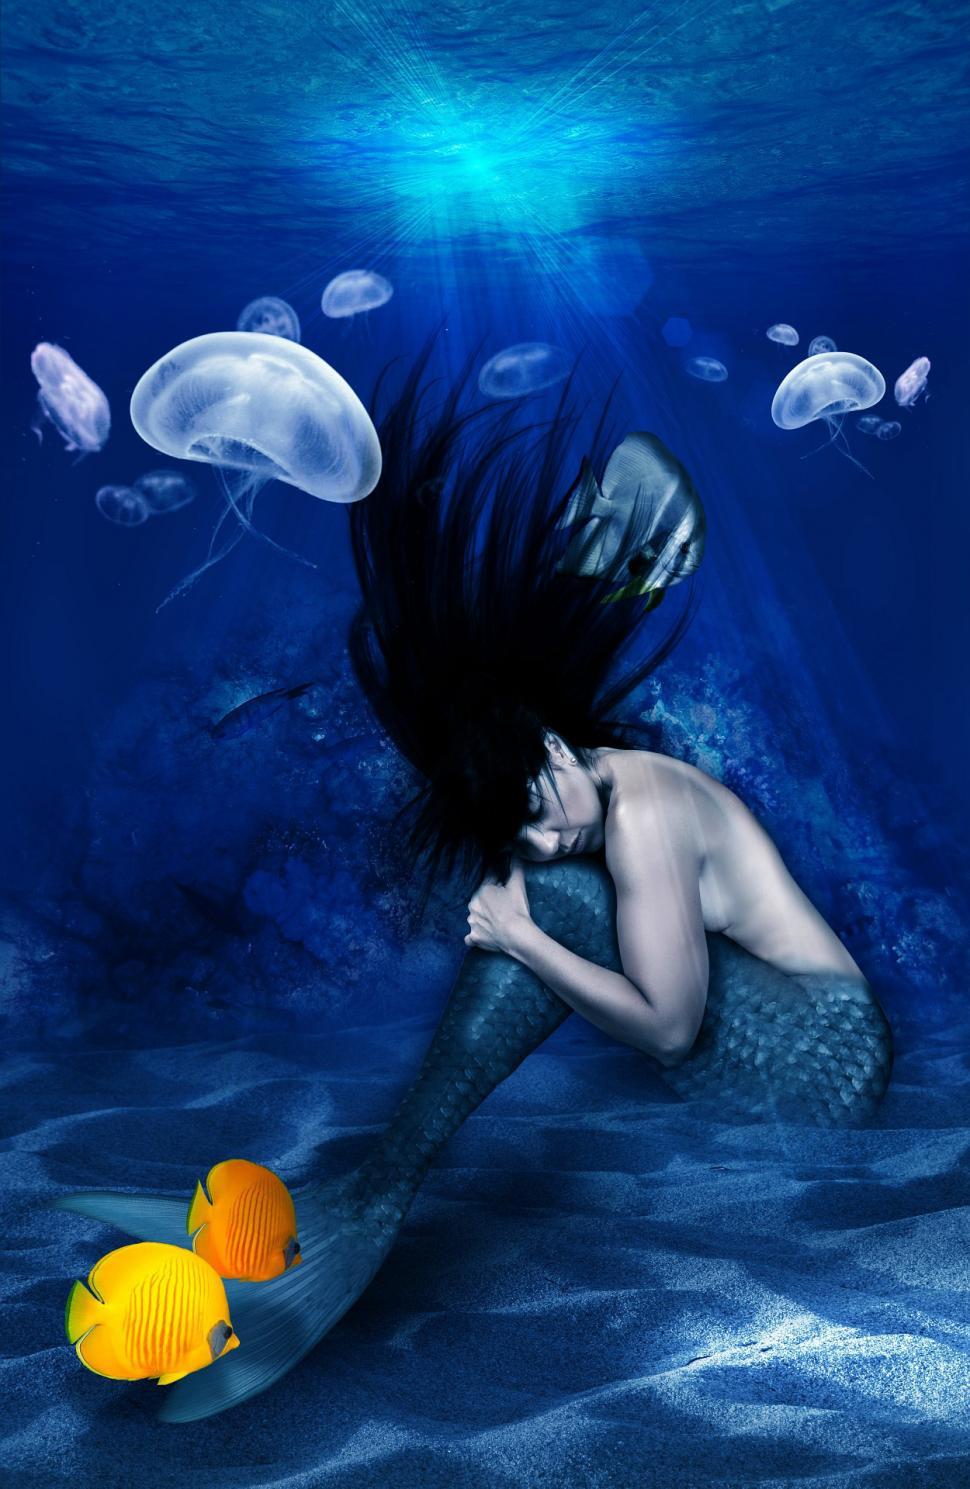 Free Image of Woman in Mermaid Costume Swimming in Ocean 